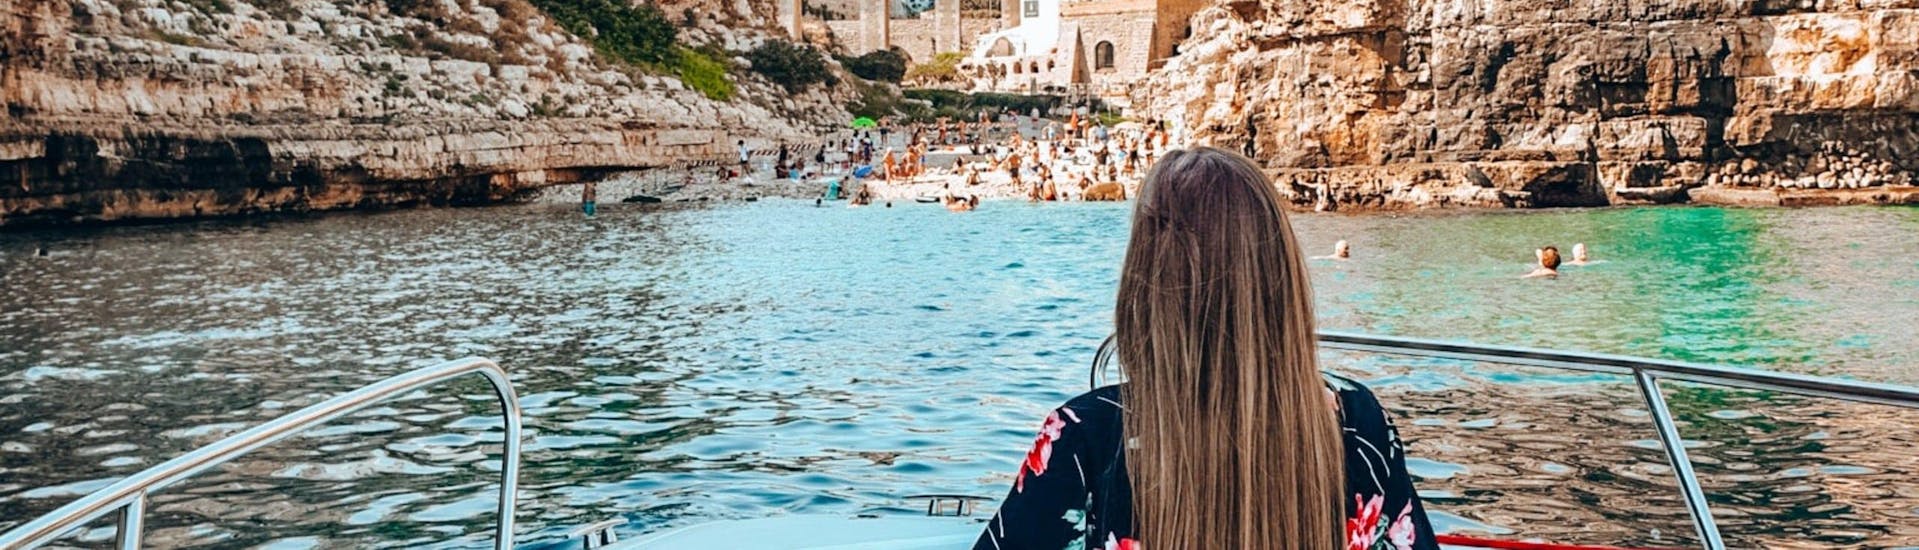 Una ragazza sta ammirando Polignano dal mare durante il giro in barca alle grotte di Polignano con aperitivo.